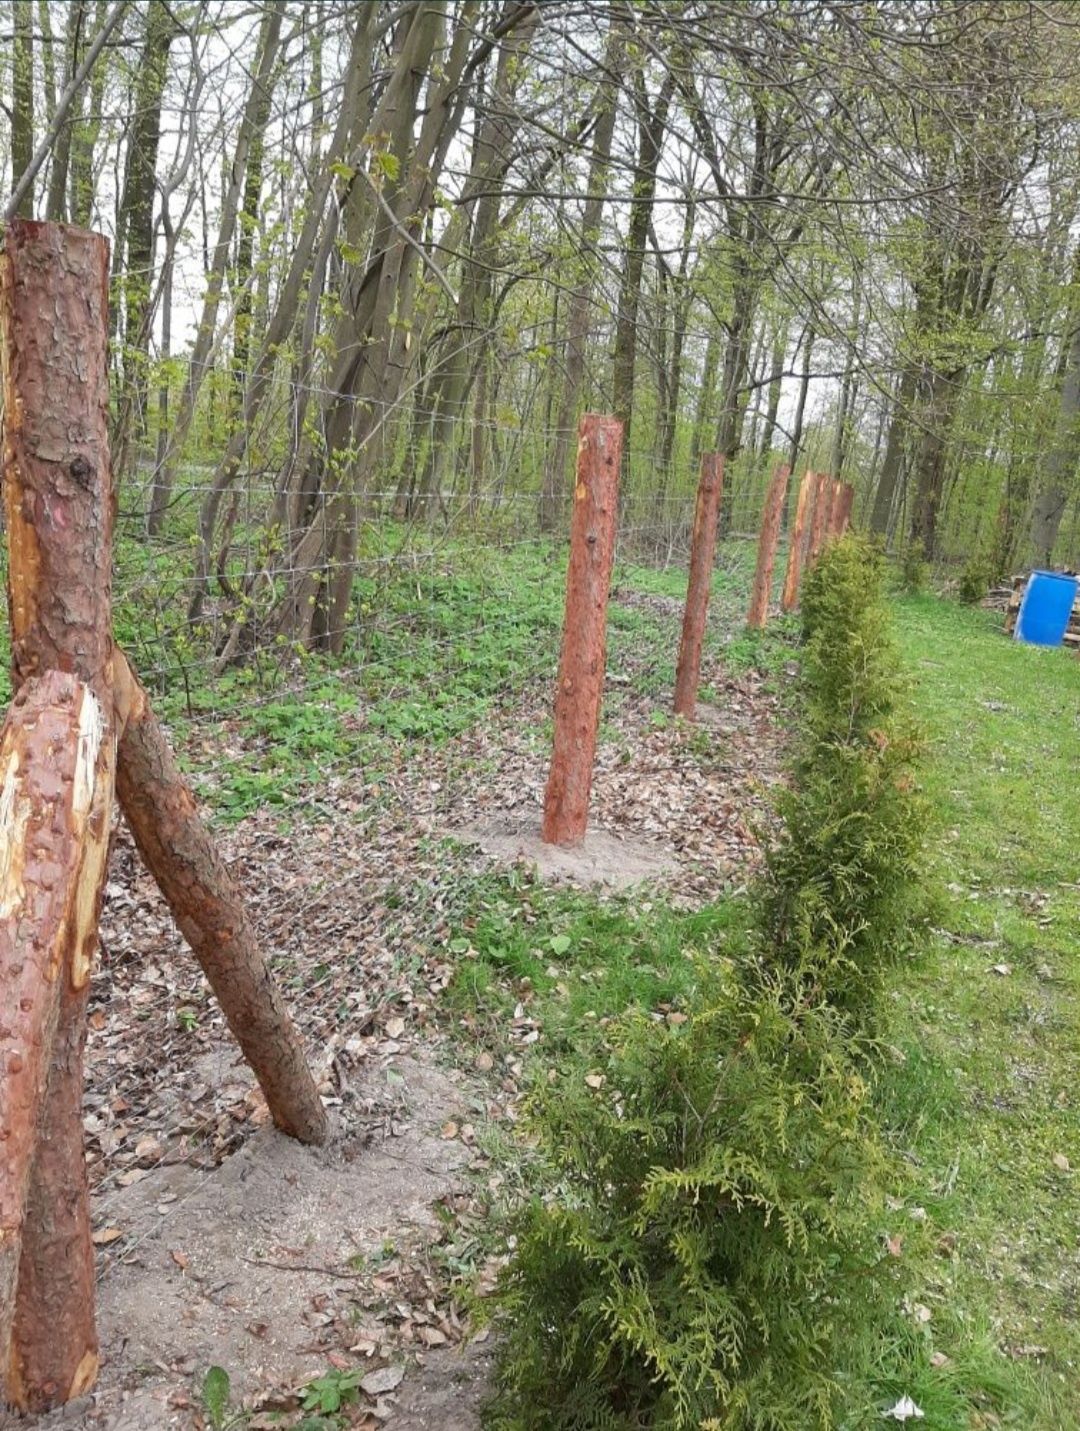 Komplet ogrodzenie z siatki leśnej słupki stemple budowlane tymczasowe